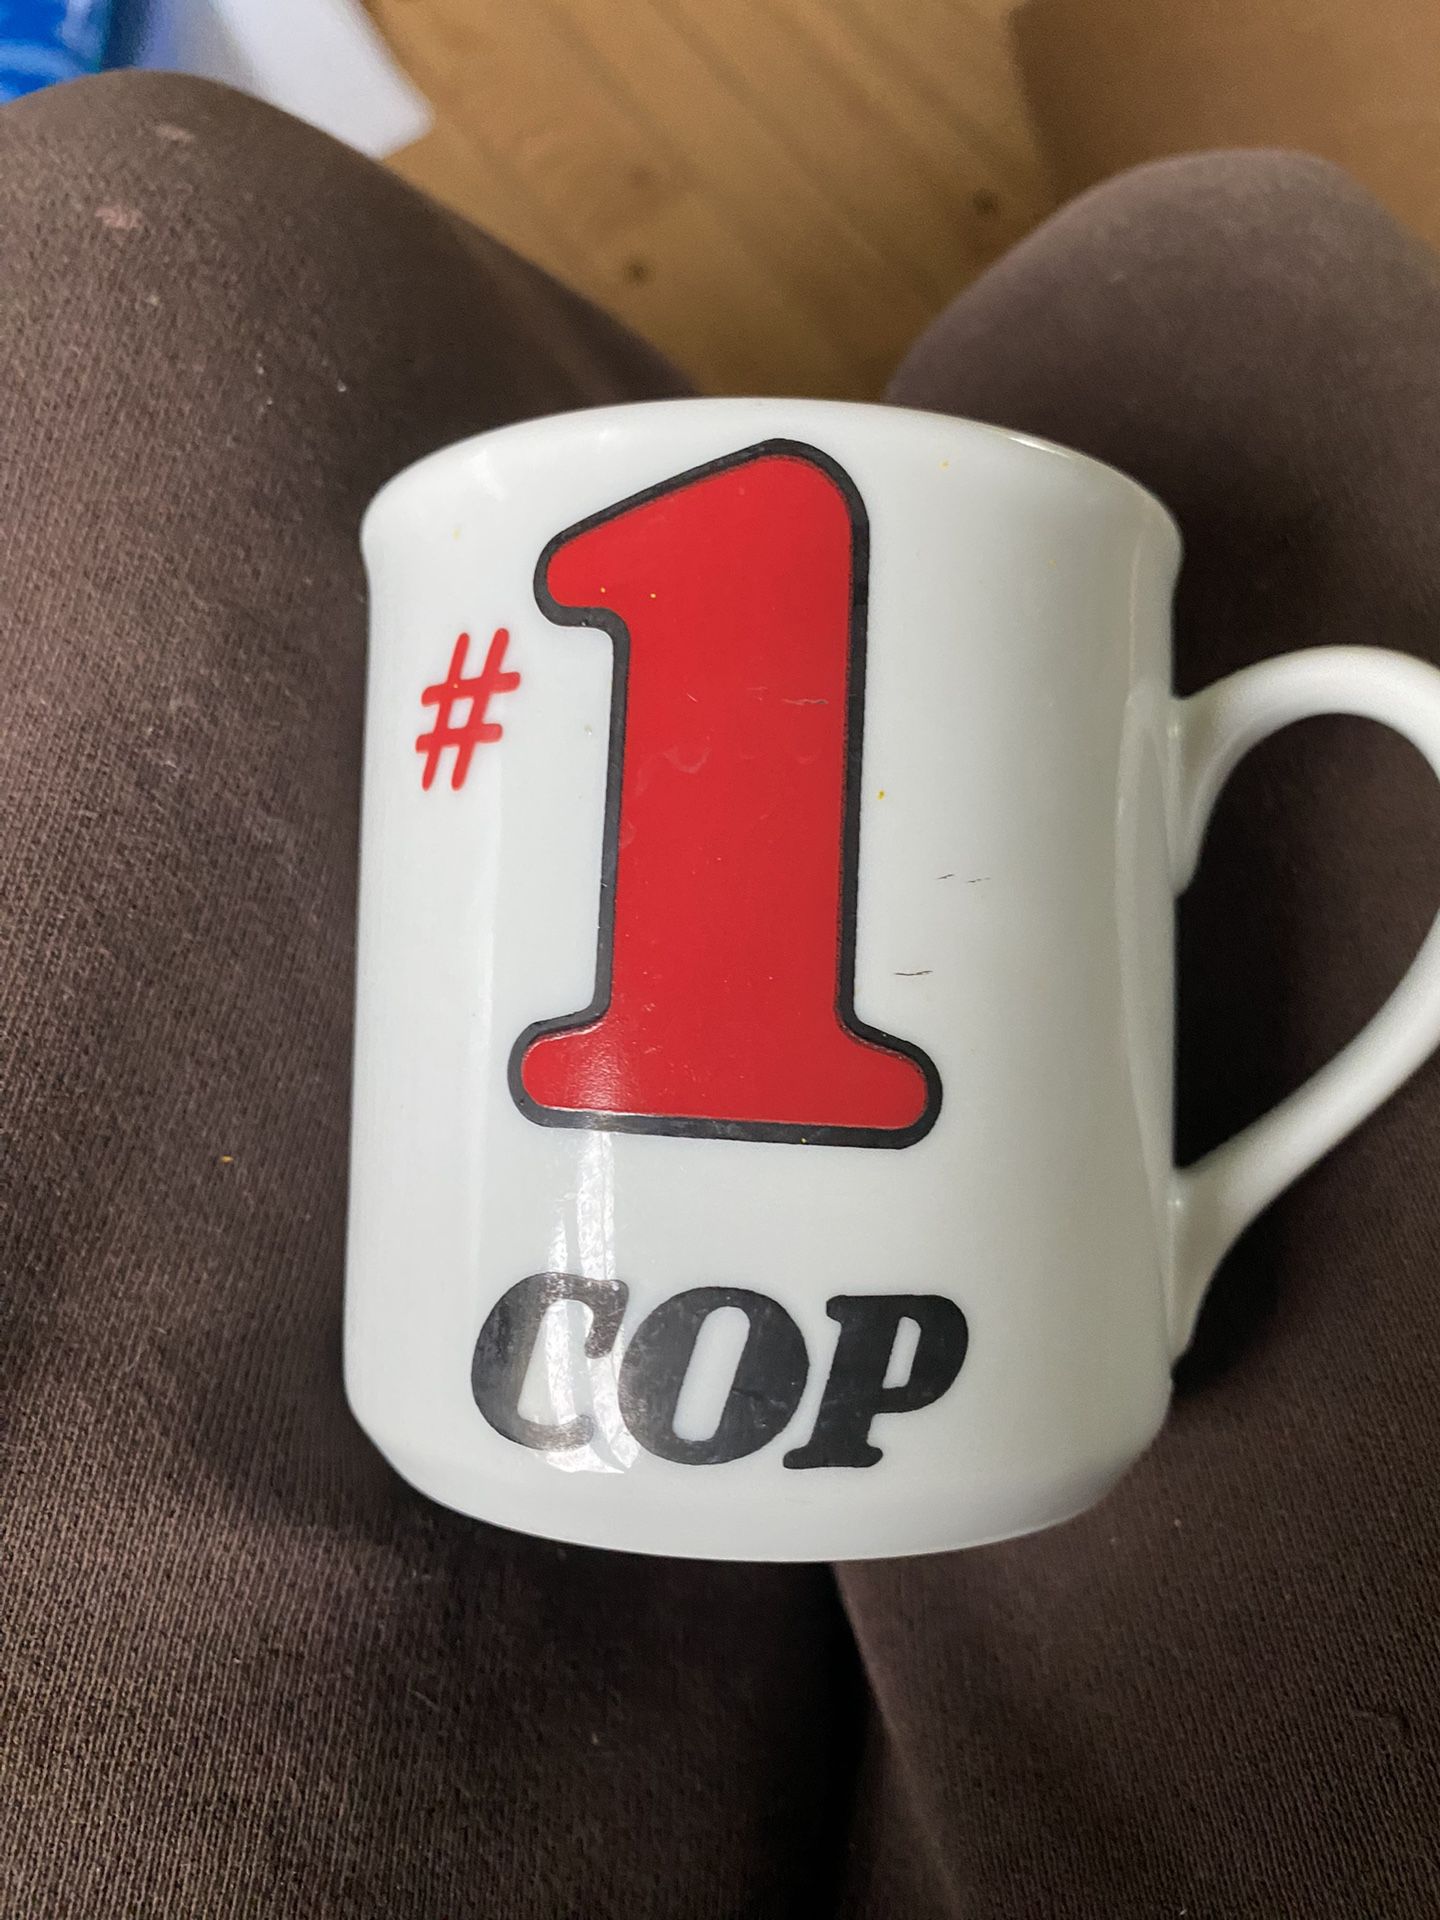 #1 Cop Mug 